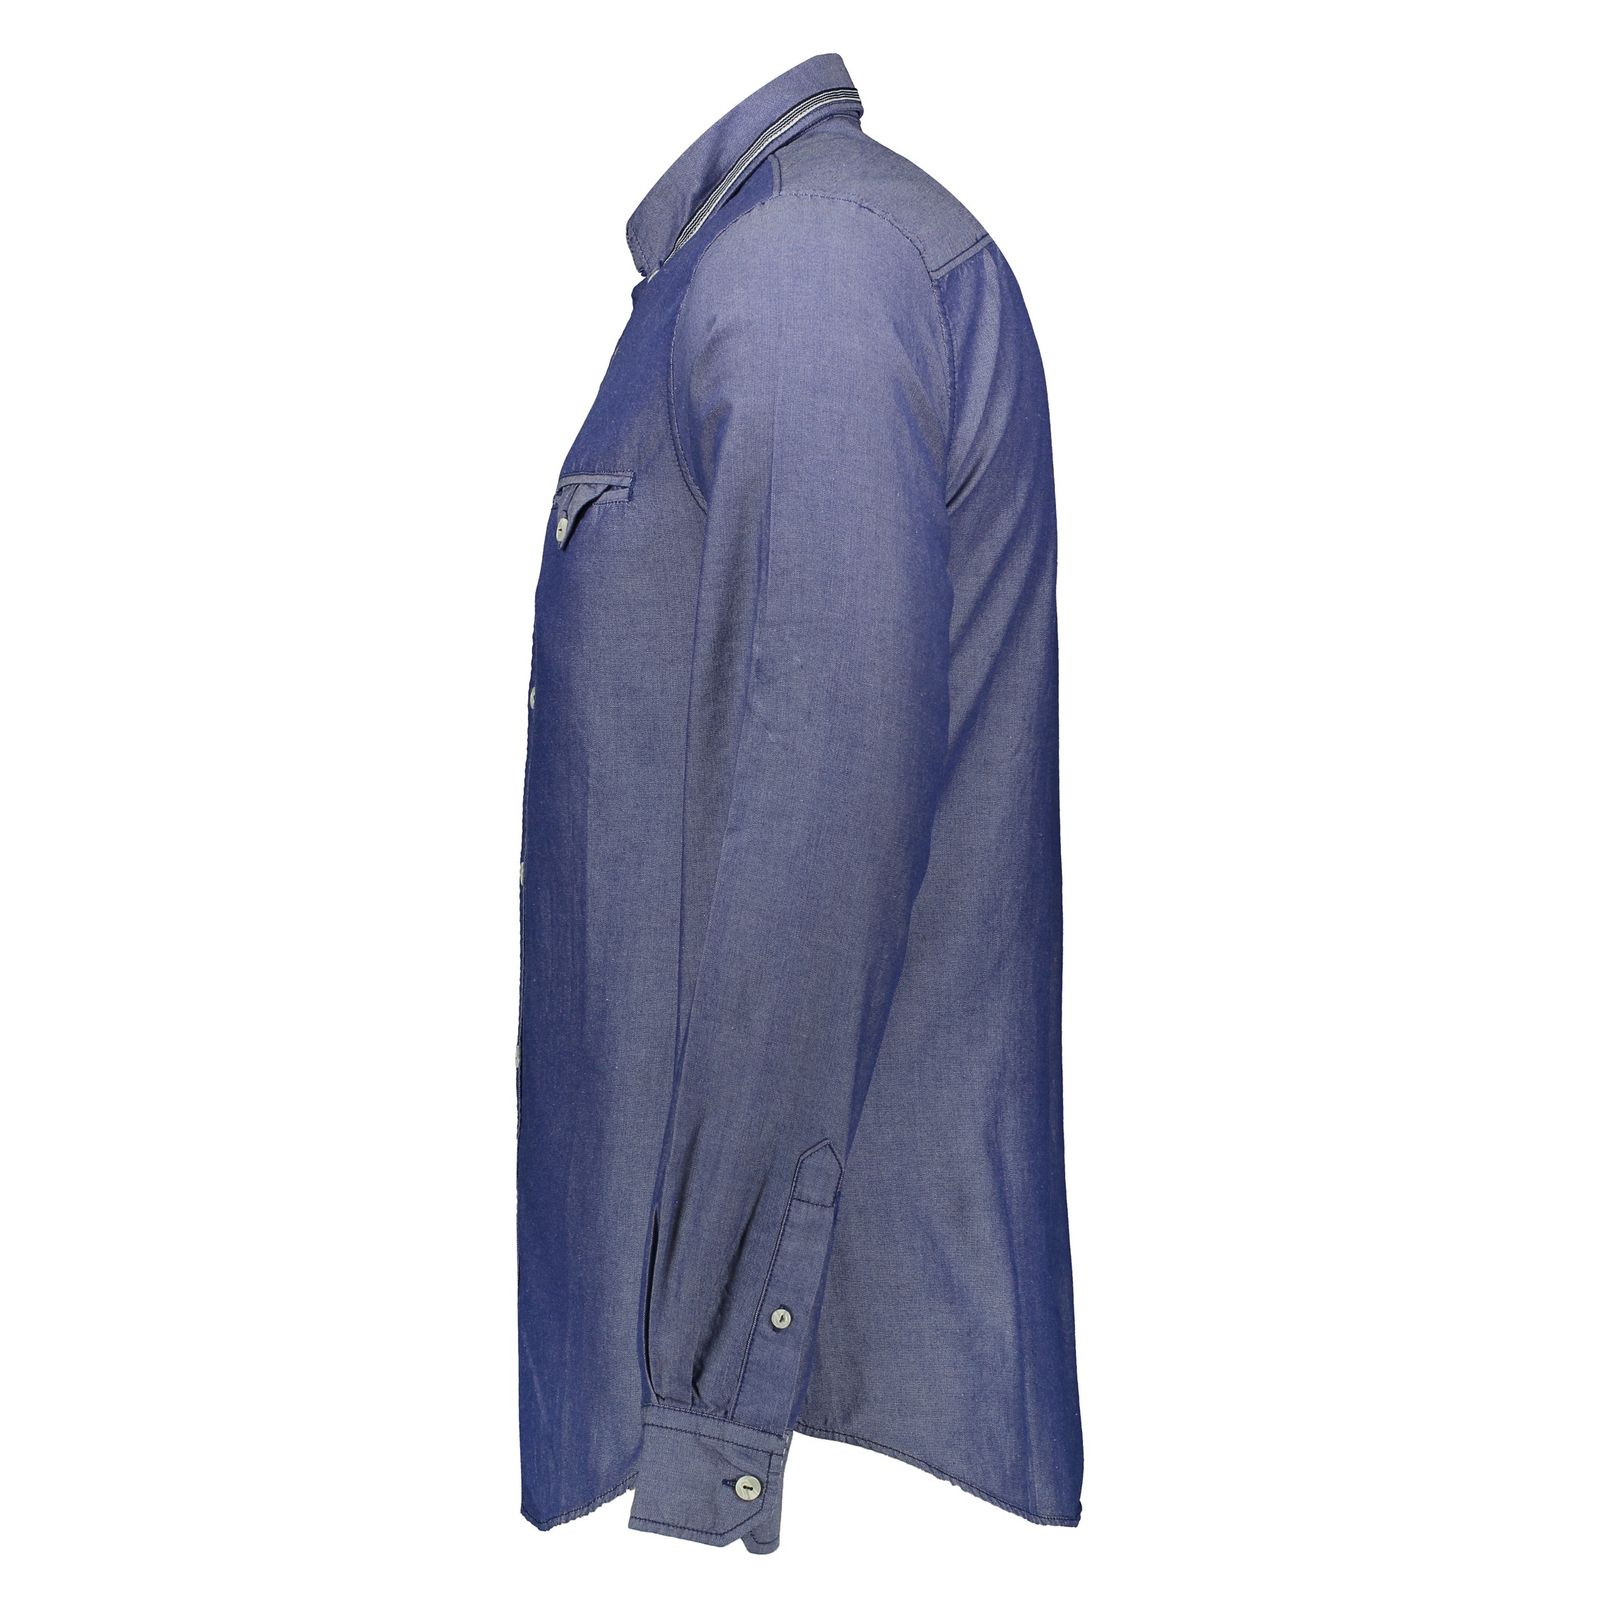 پیراهن مردانه اسپرینگ فیلد مدل 0275549-12 - آبی - 3